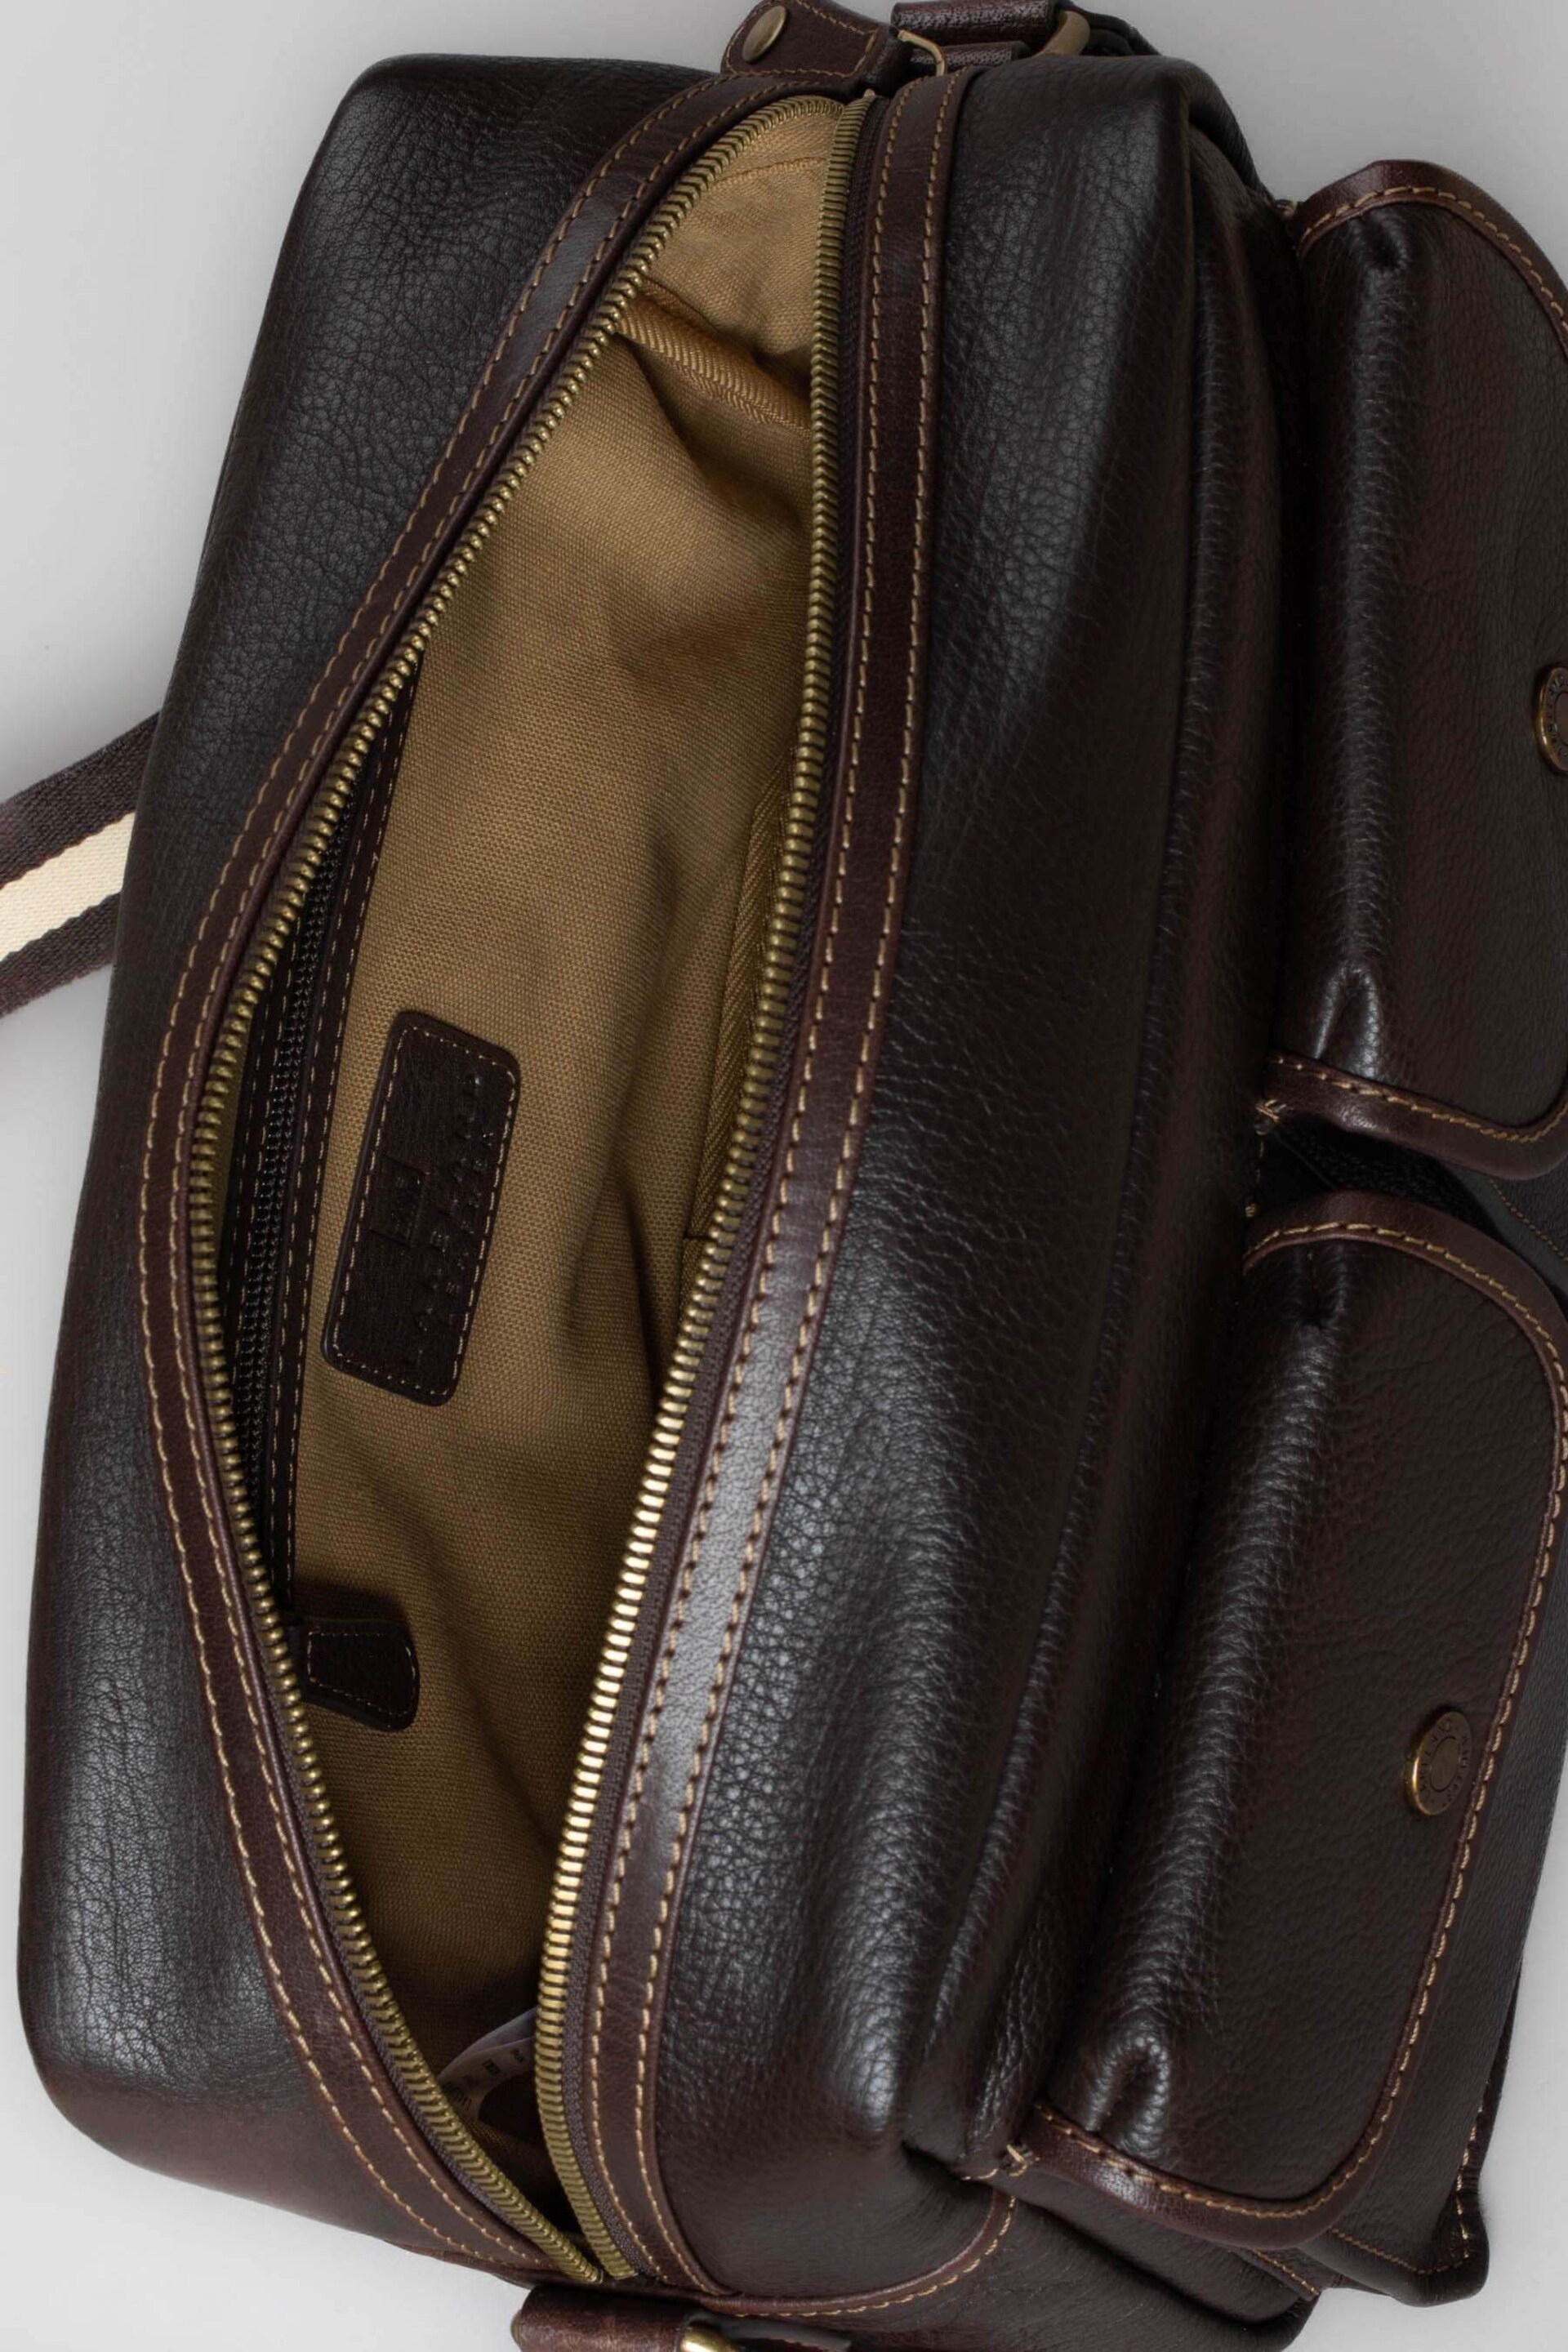 Lakeland Leather Kelsick Leather Messenger Brown Bag - Image 8 of 9